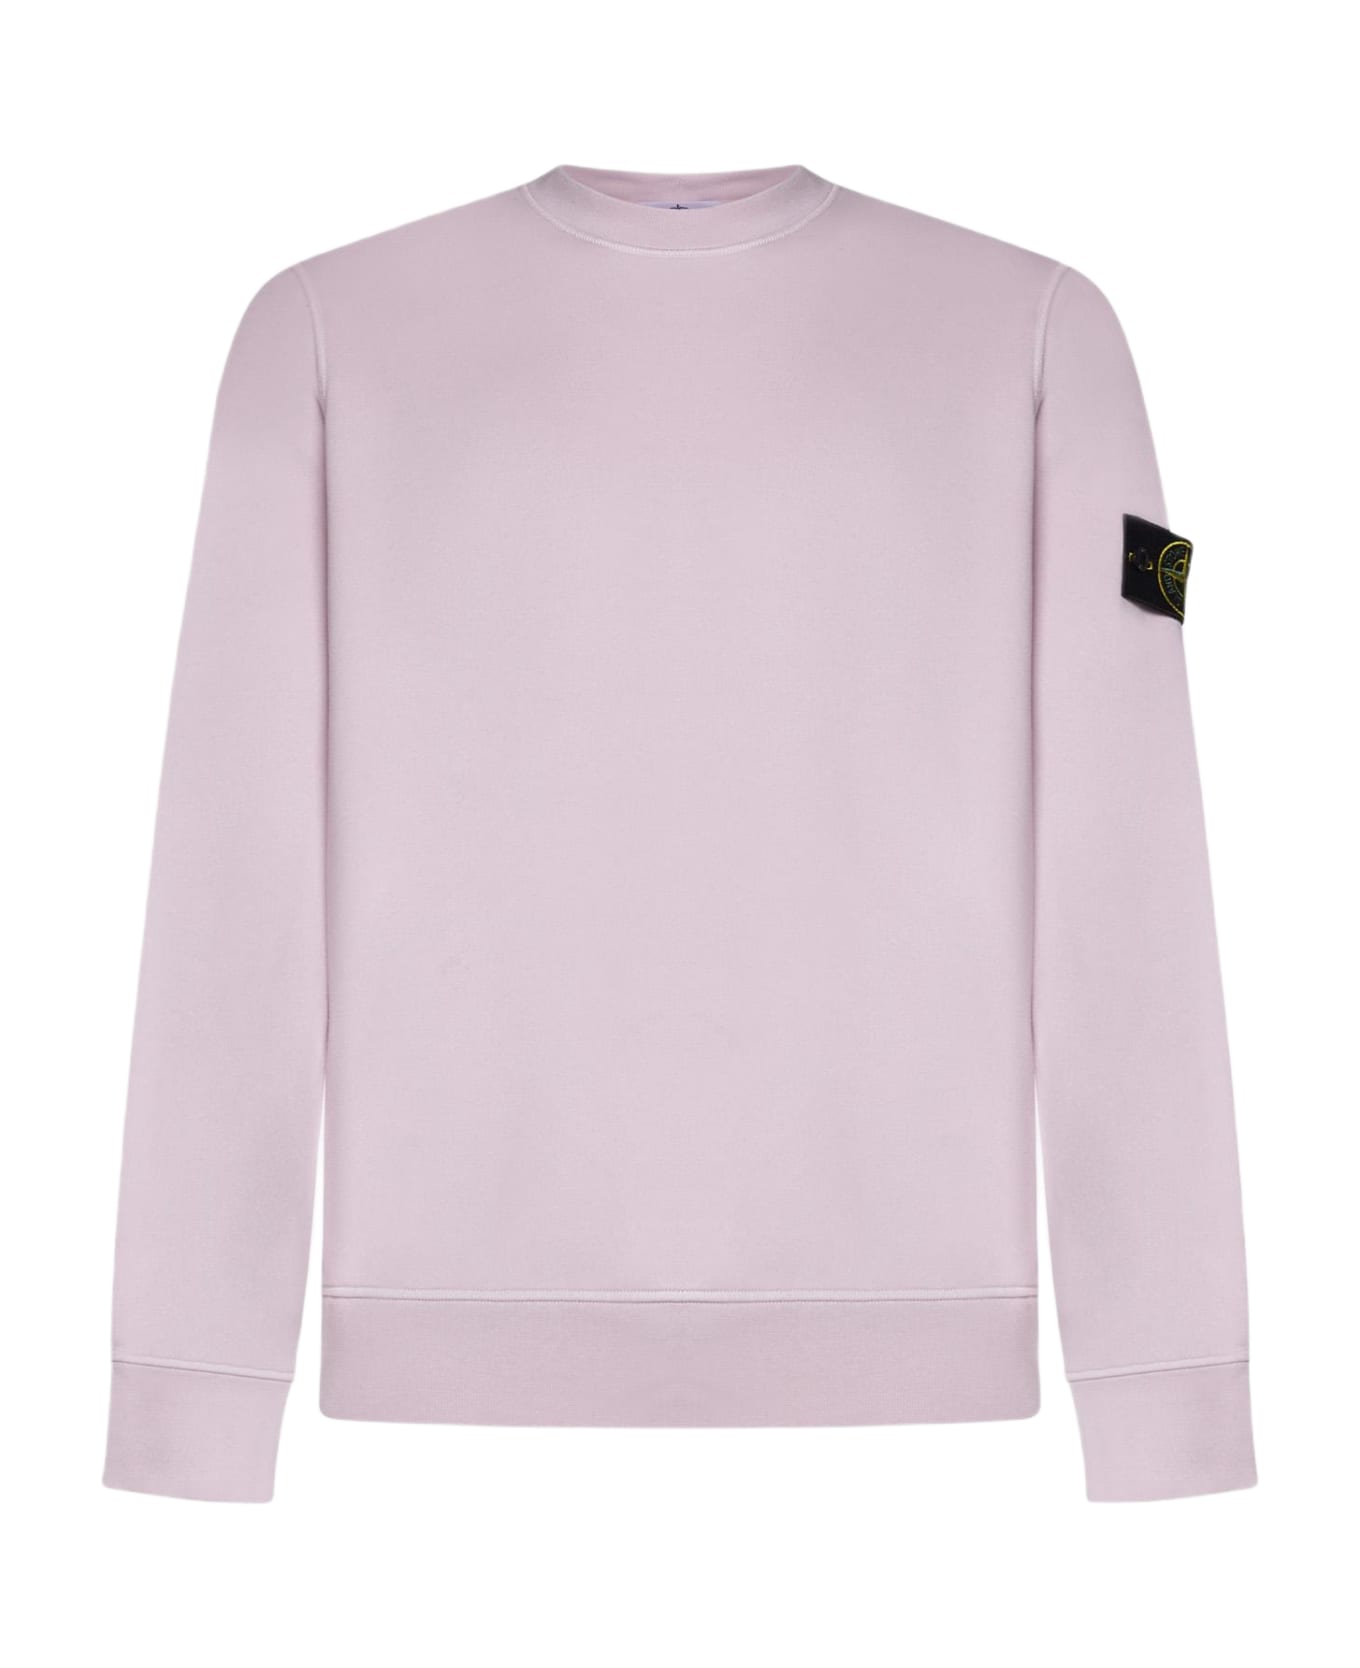 Stone Island Cotton Sweatshirt Fleece - PINK